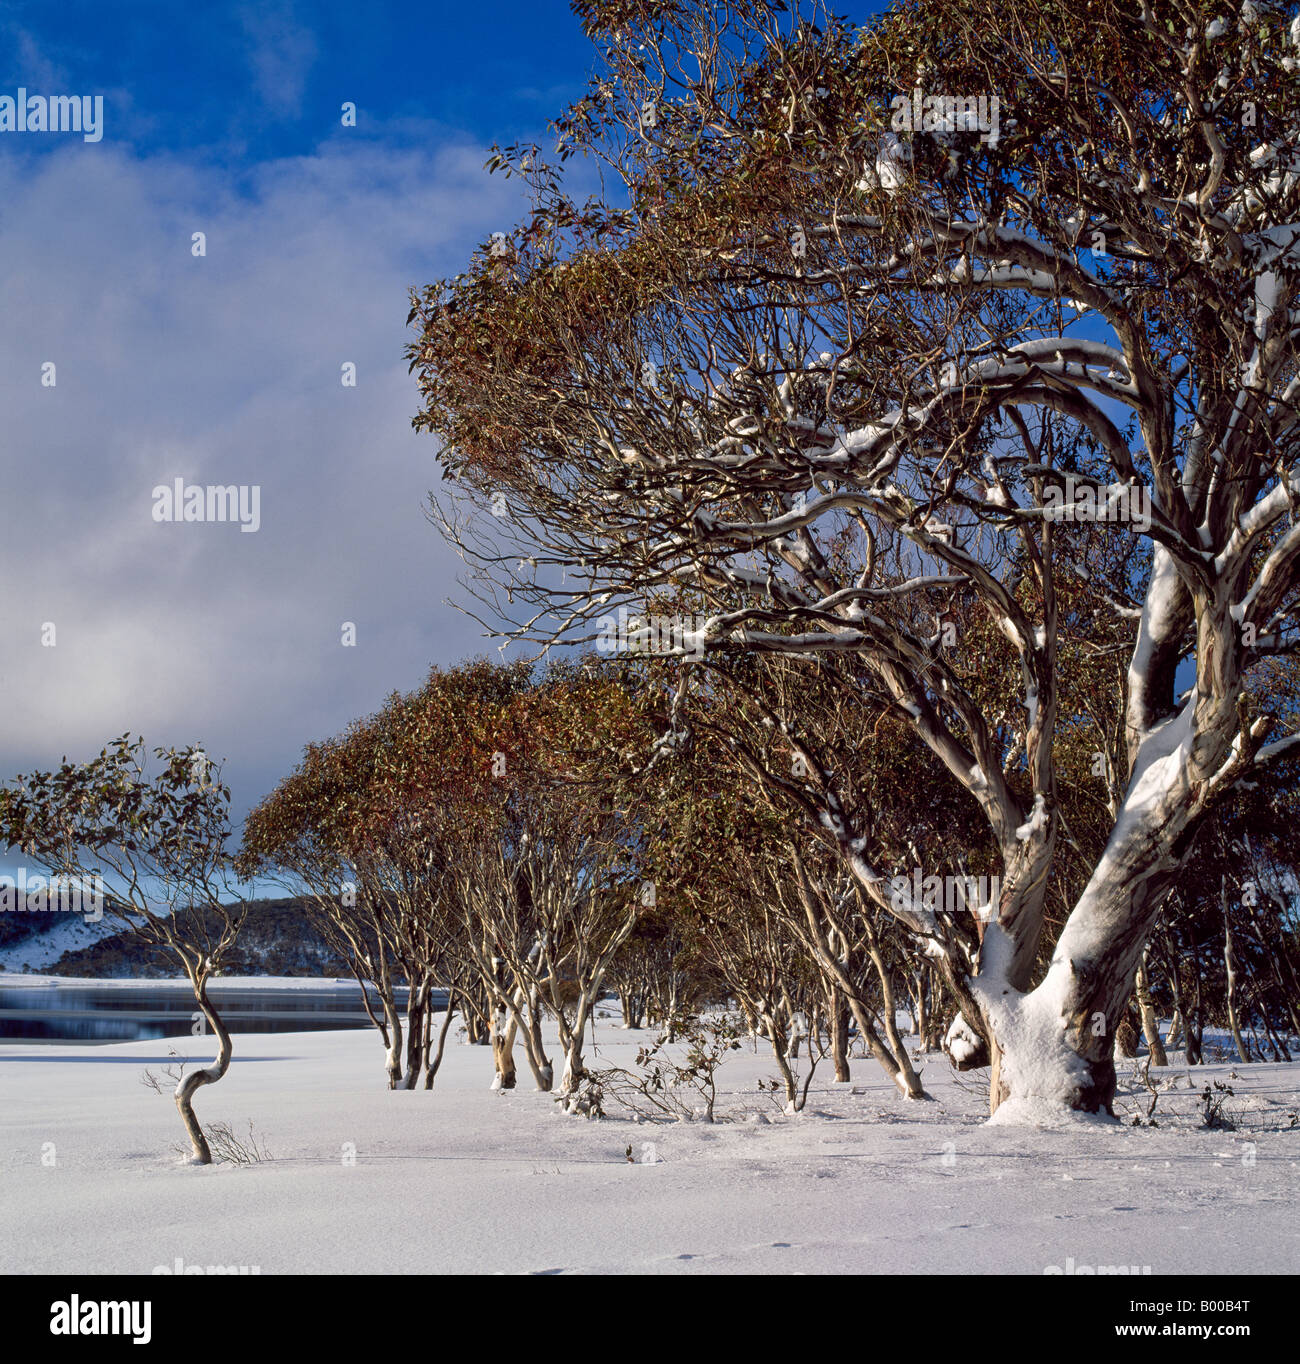 Les gencives de la neige en hiver, les montagnes enneigées du Parc National Kosciuszko Australie Nouvelle Galles du Sud Banque D'Images